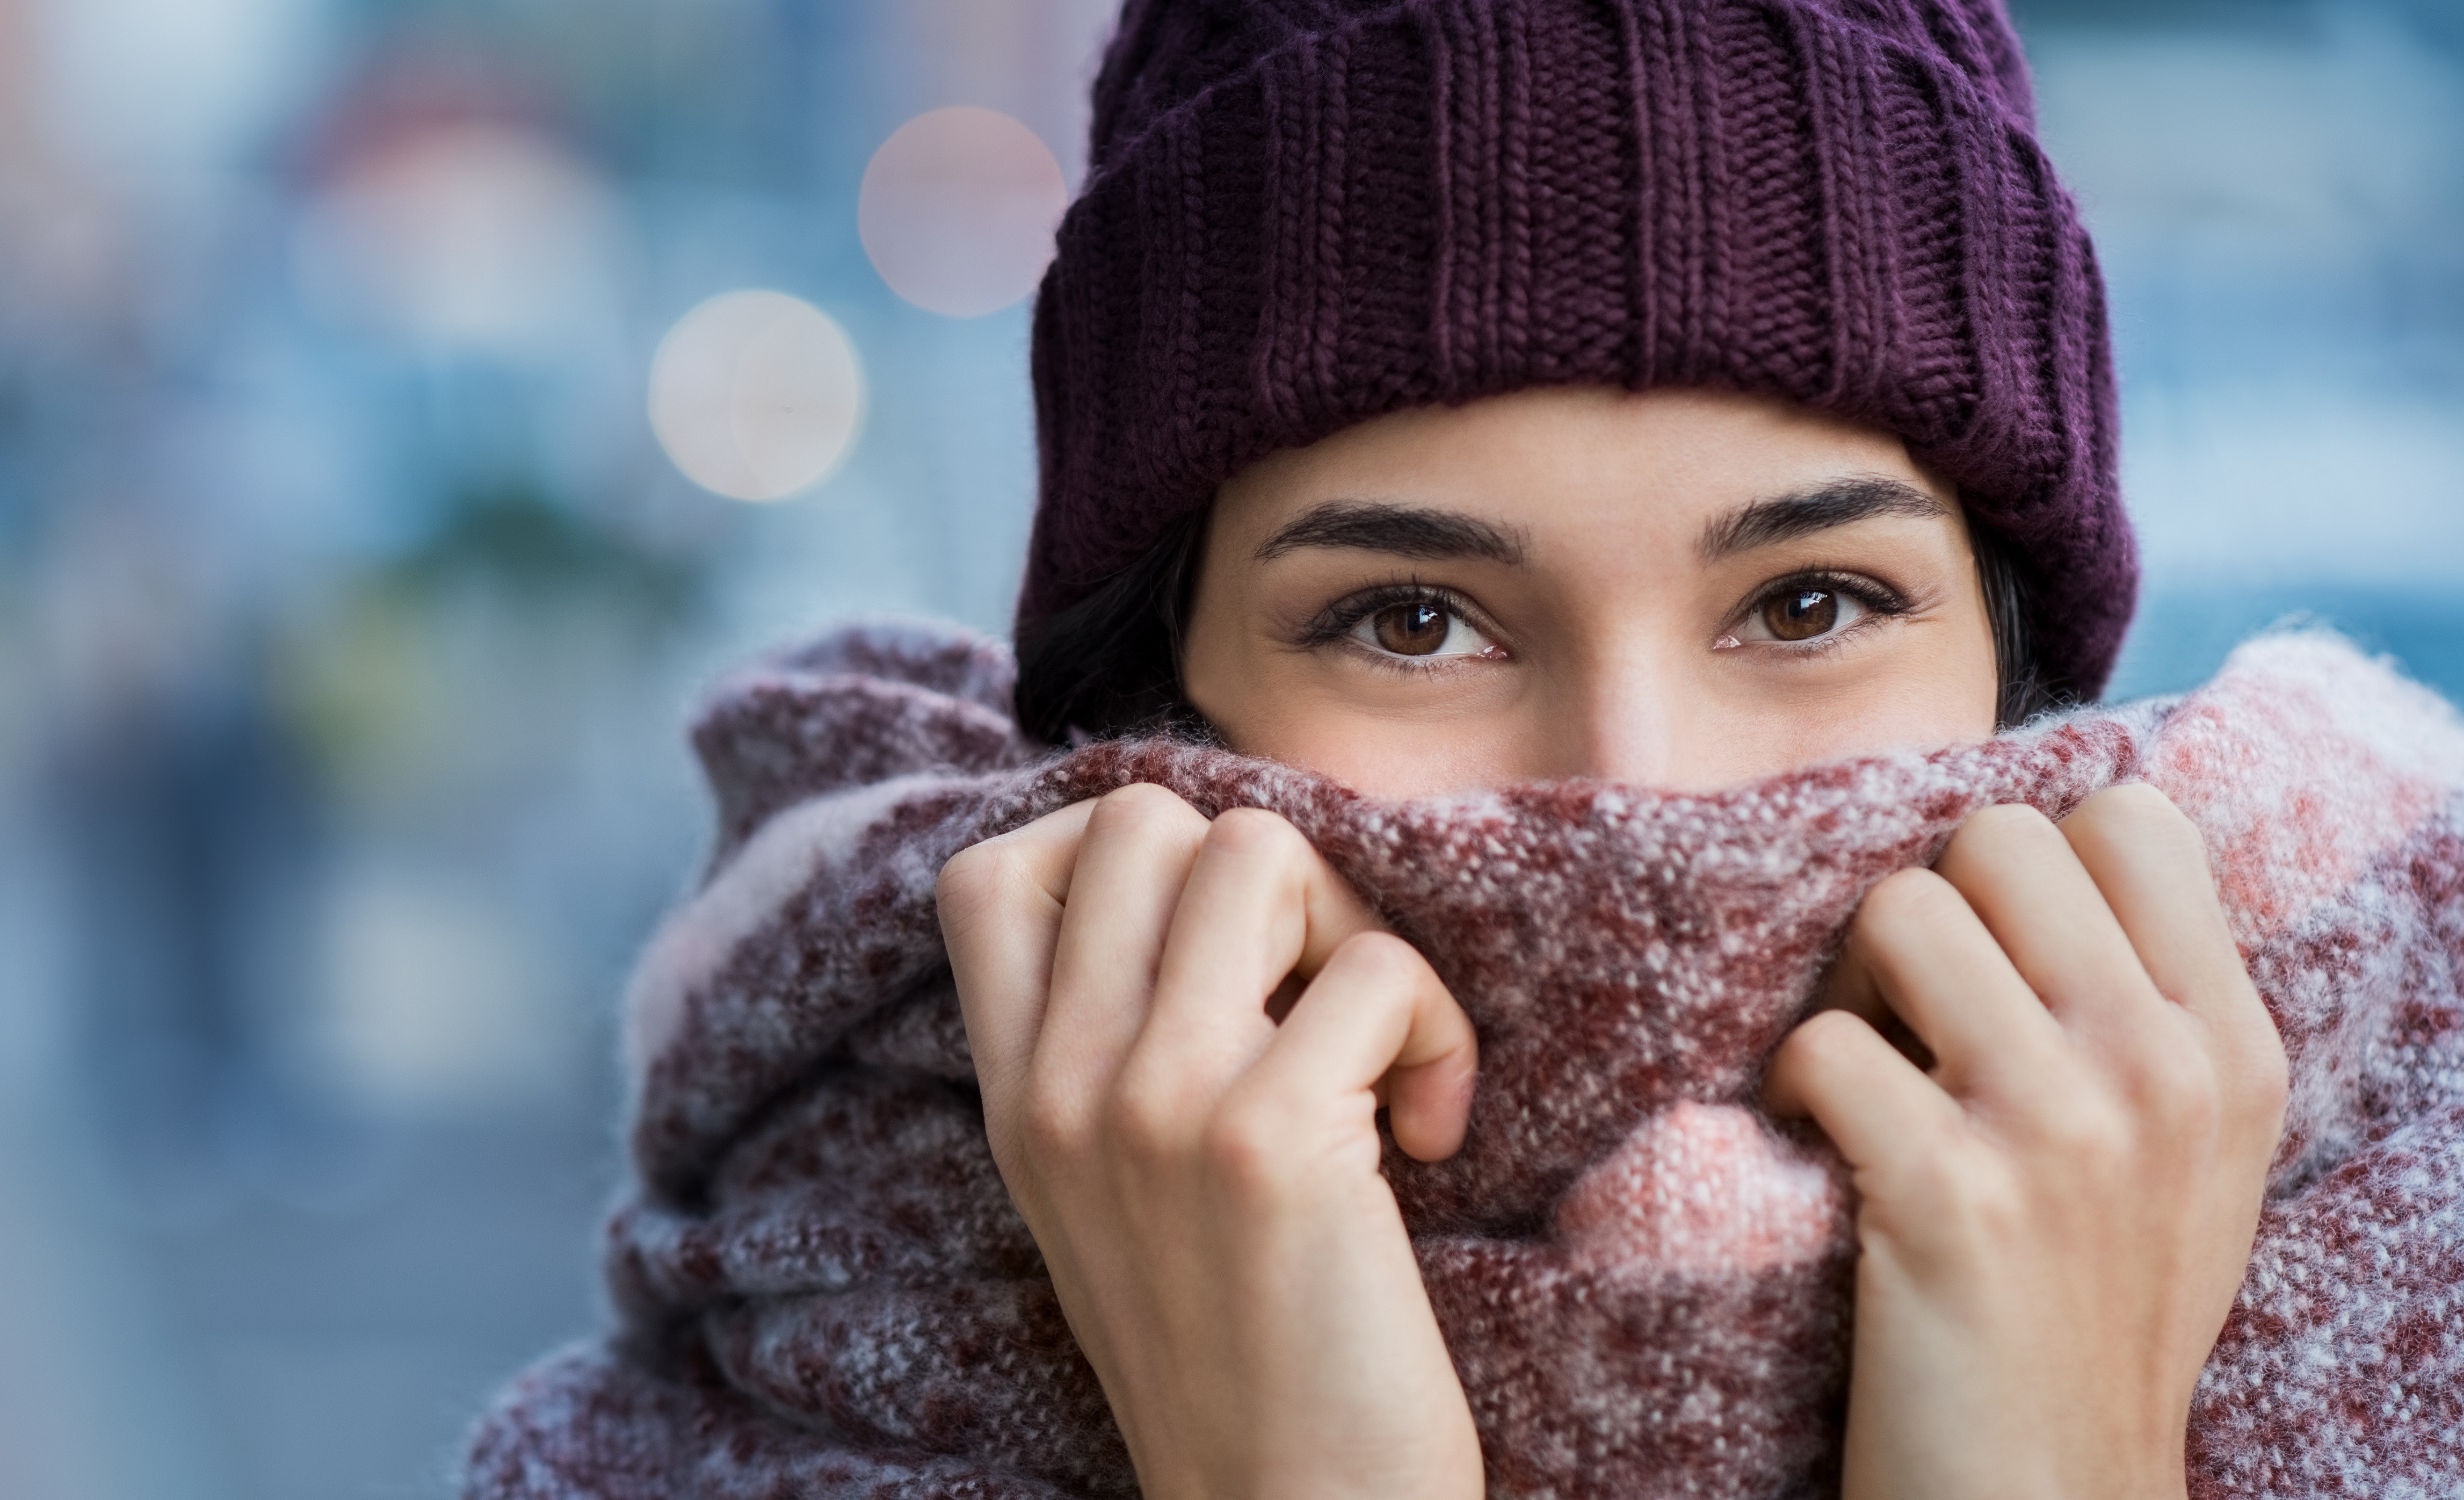 Замерз зимой. Кутается в шарф. Шарф на человеке. Девушка укутанная в шарф. Девушка в теплой одежде.